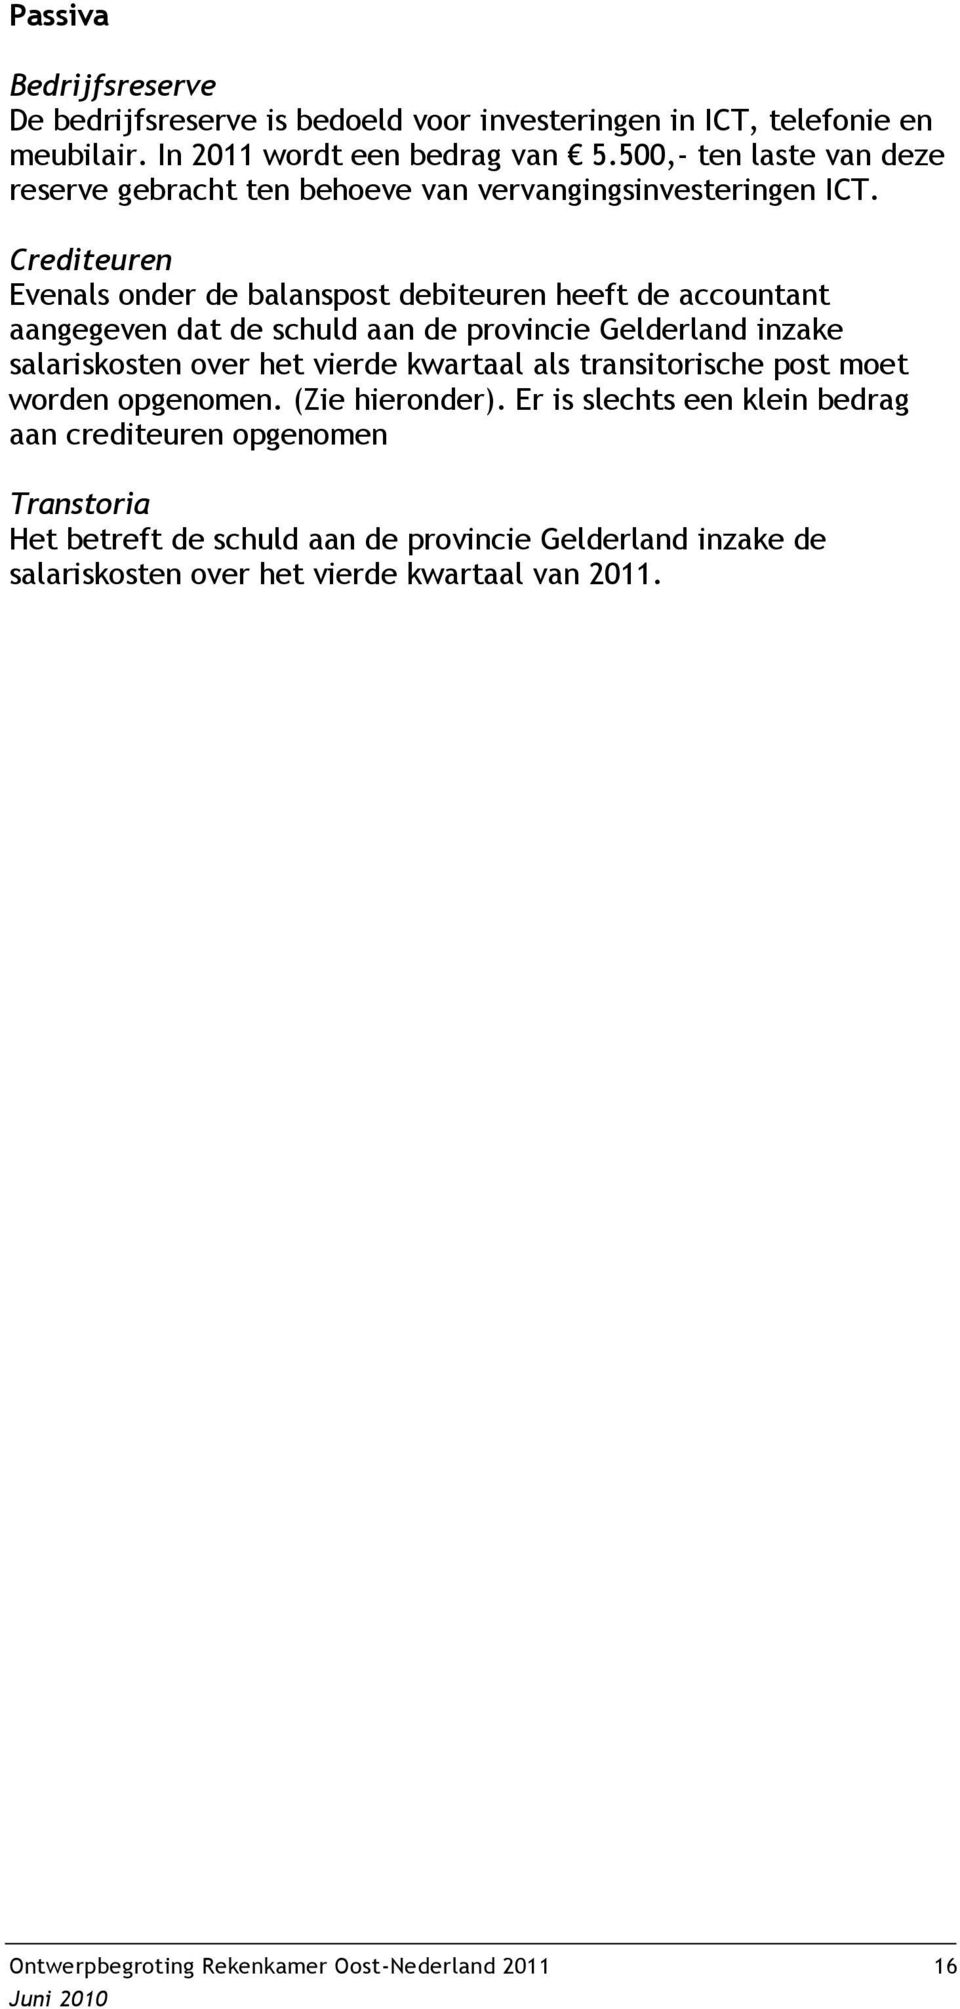 Crediteuren Evenals onder de balanspost debiteuren heeft de accountant aangegeven dat de schuld aan de provincie Gelderland inzake salariskosten over het vierde kwartaal